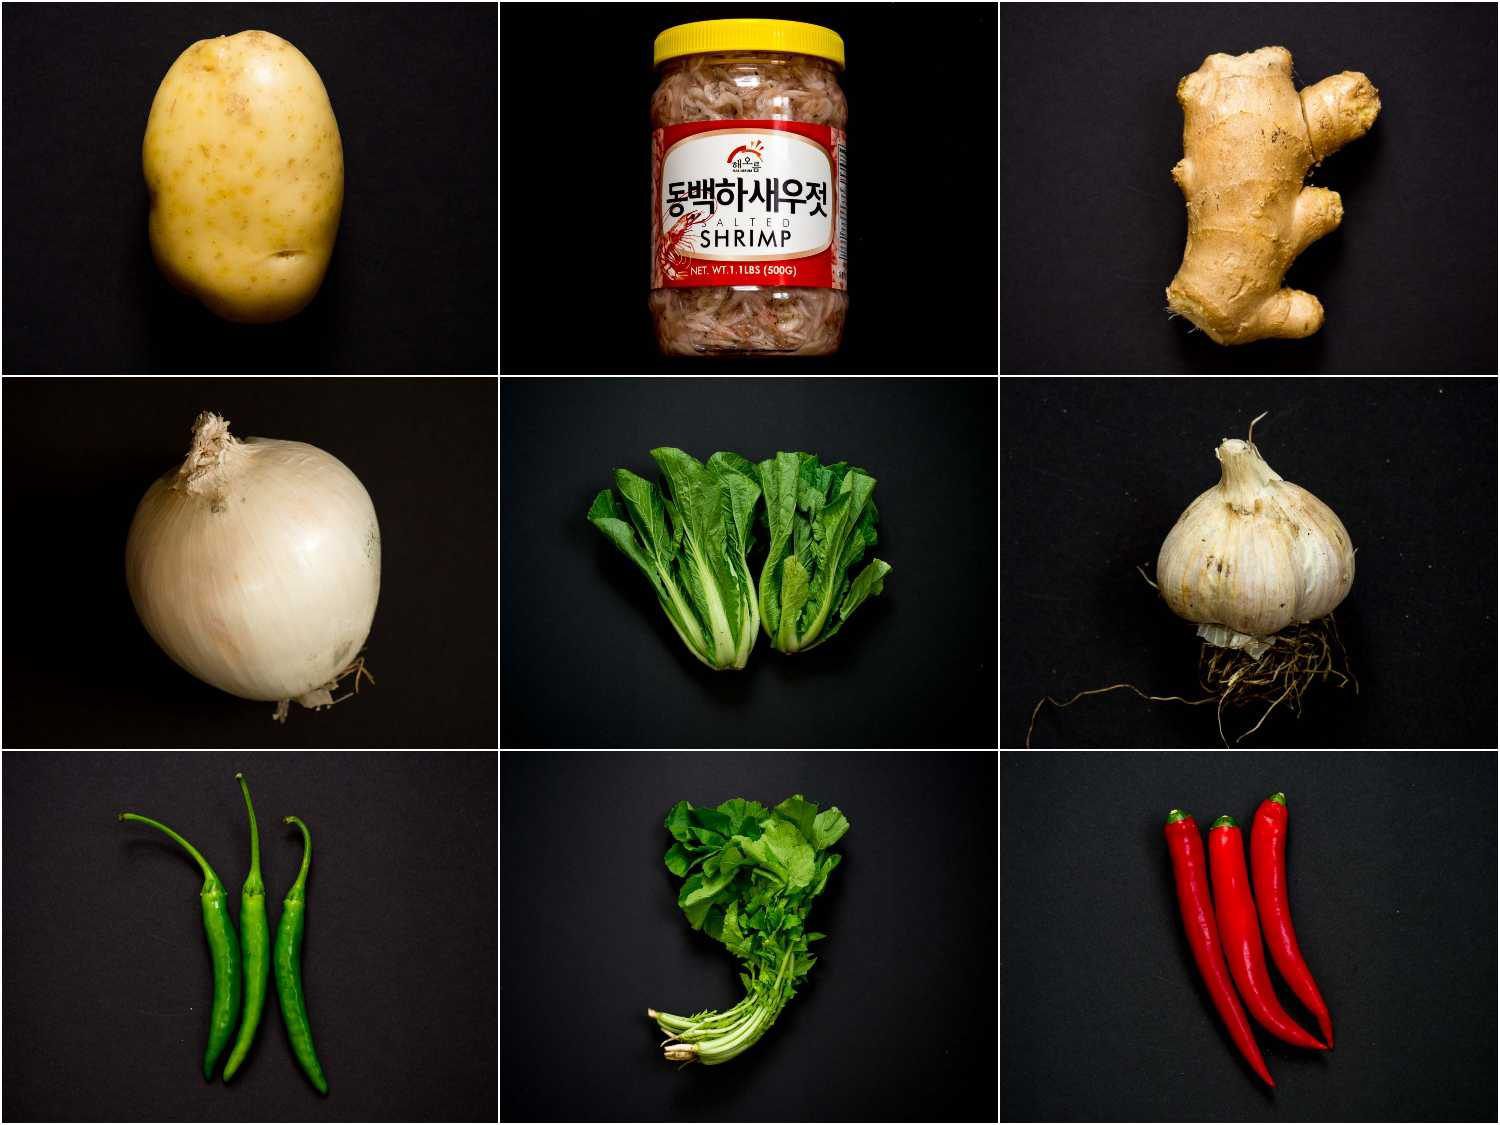 烈木泡菜的主要食材，从上华体会应用下载至下、从左至右依次为:土豆、腌虾、姜、洋葱、白菜、大蒜、辣椒、小萝卜